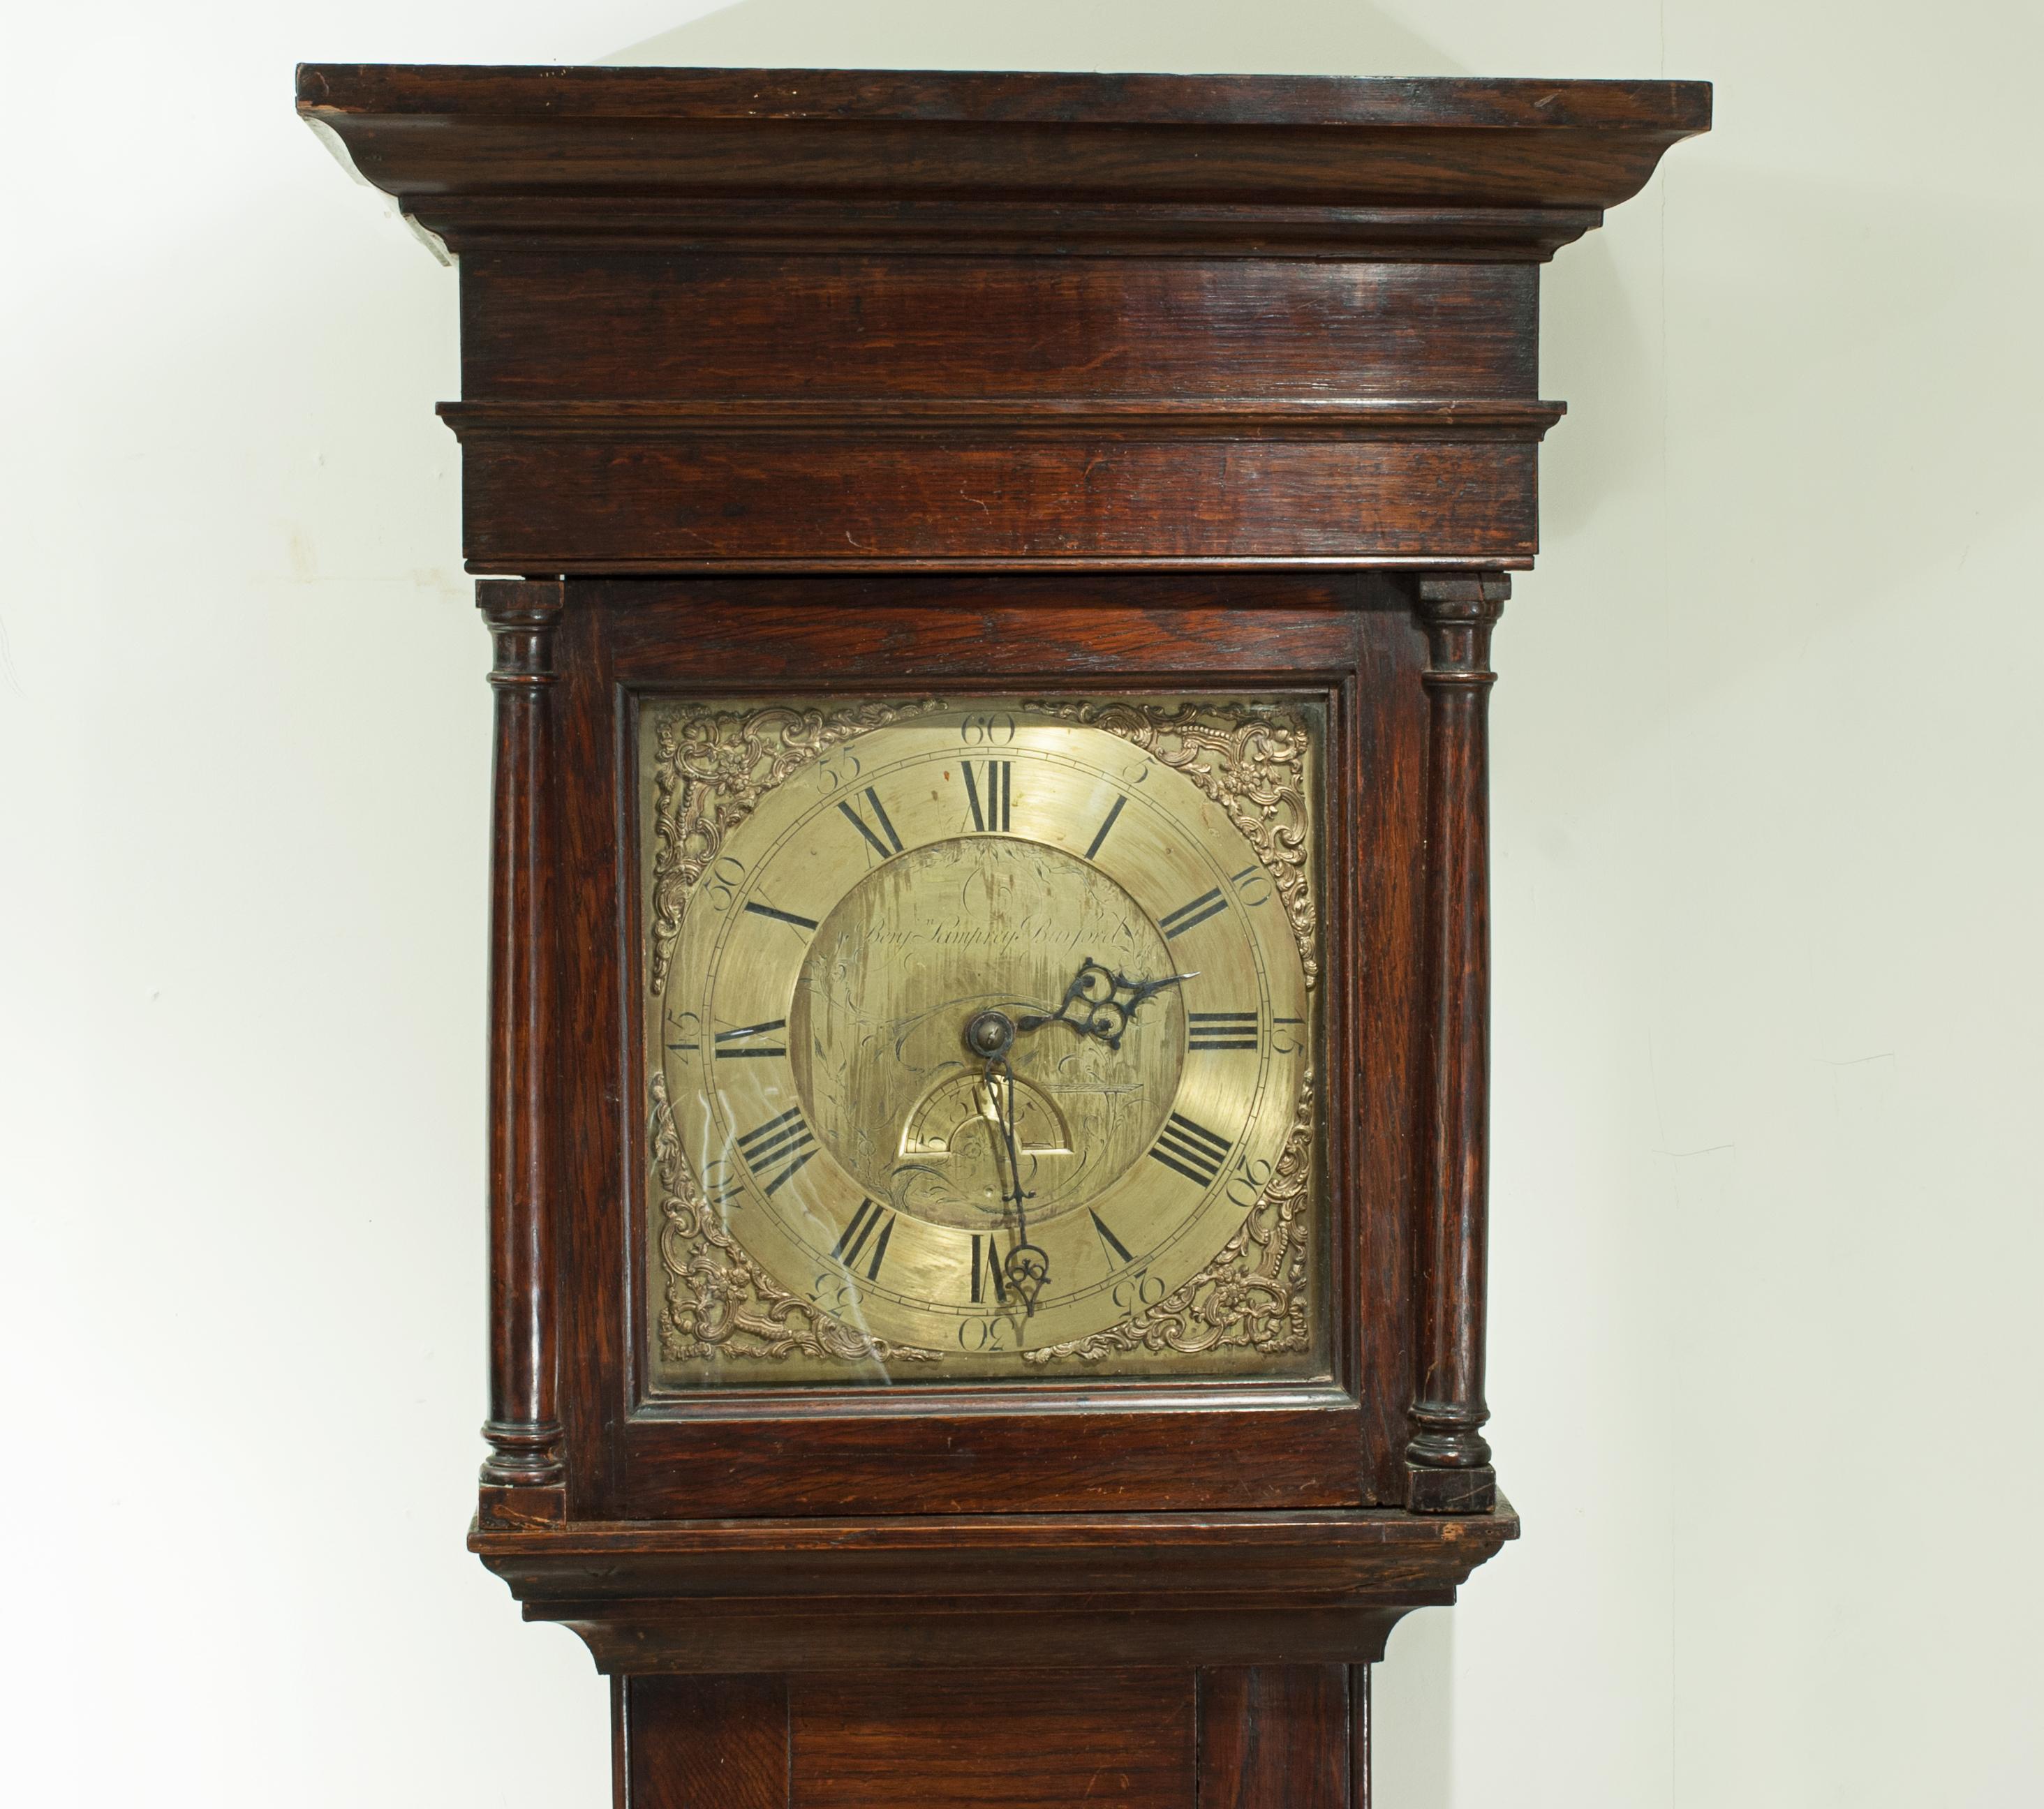 Horloge à boîtier long Benjamin Lamprey.
Une magnifique horloge grand-père de l'horloger Benjamin Lamprey, de Burford, dans les Cotswolds. Horloge en chêne du milieu du XVIIIe siècle, avec un cadran carré de 11 pouces en laiton avec des chiffres